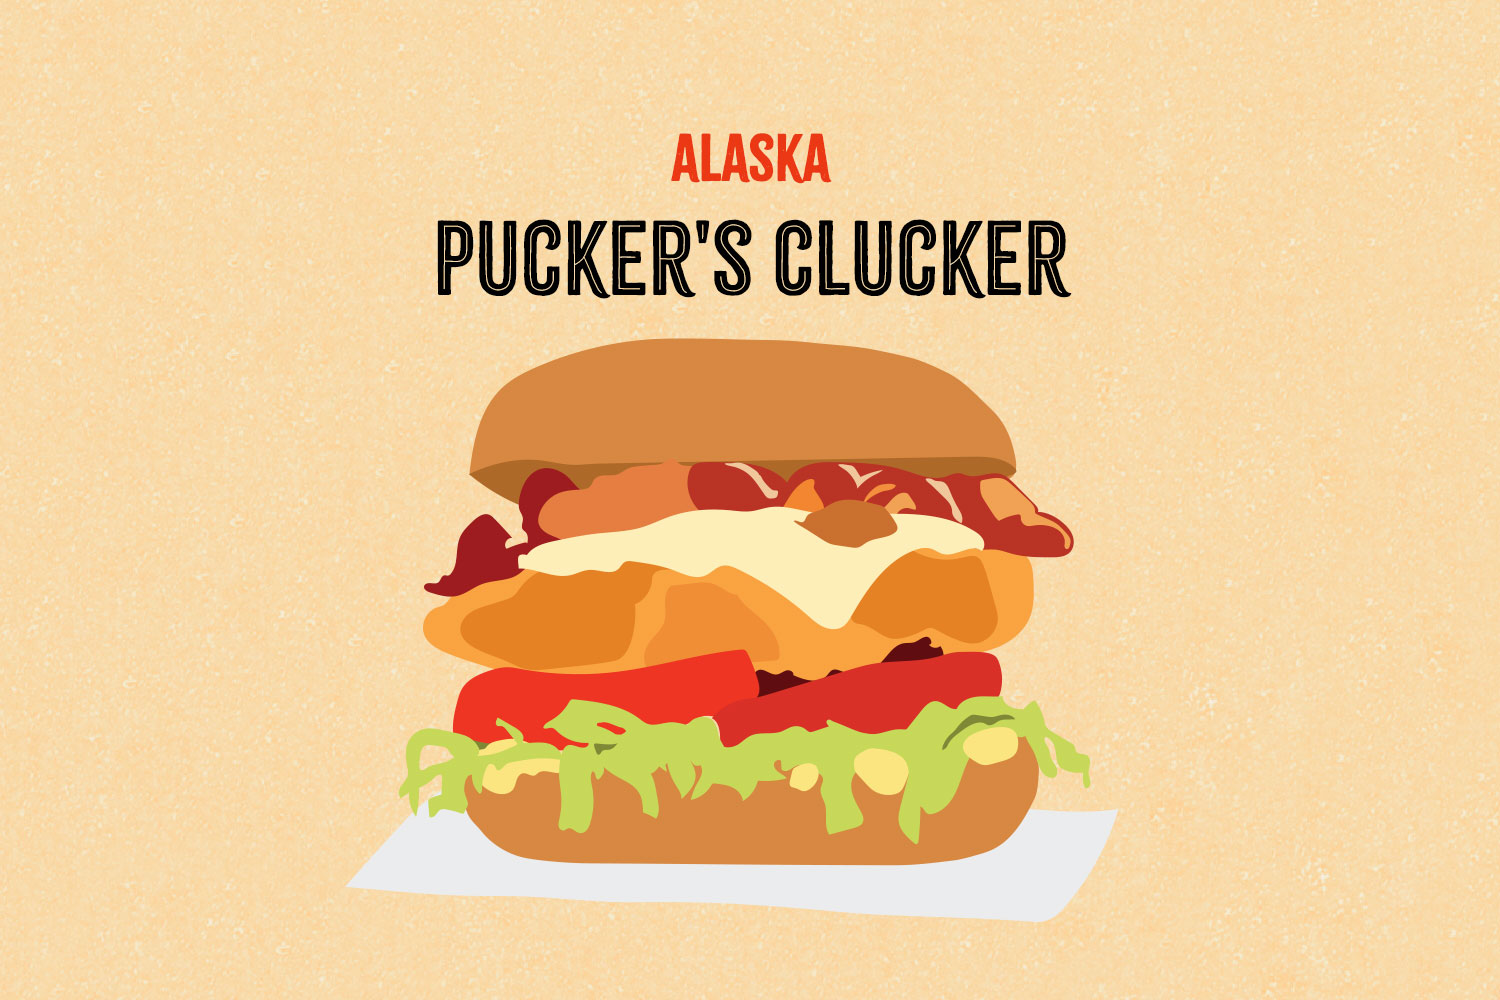 Pucker's Clucker illustration